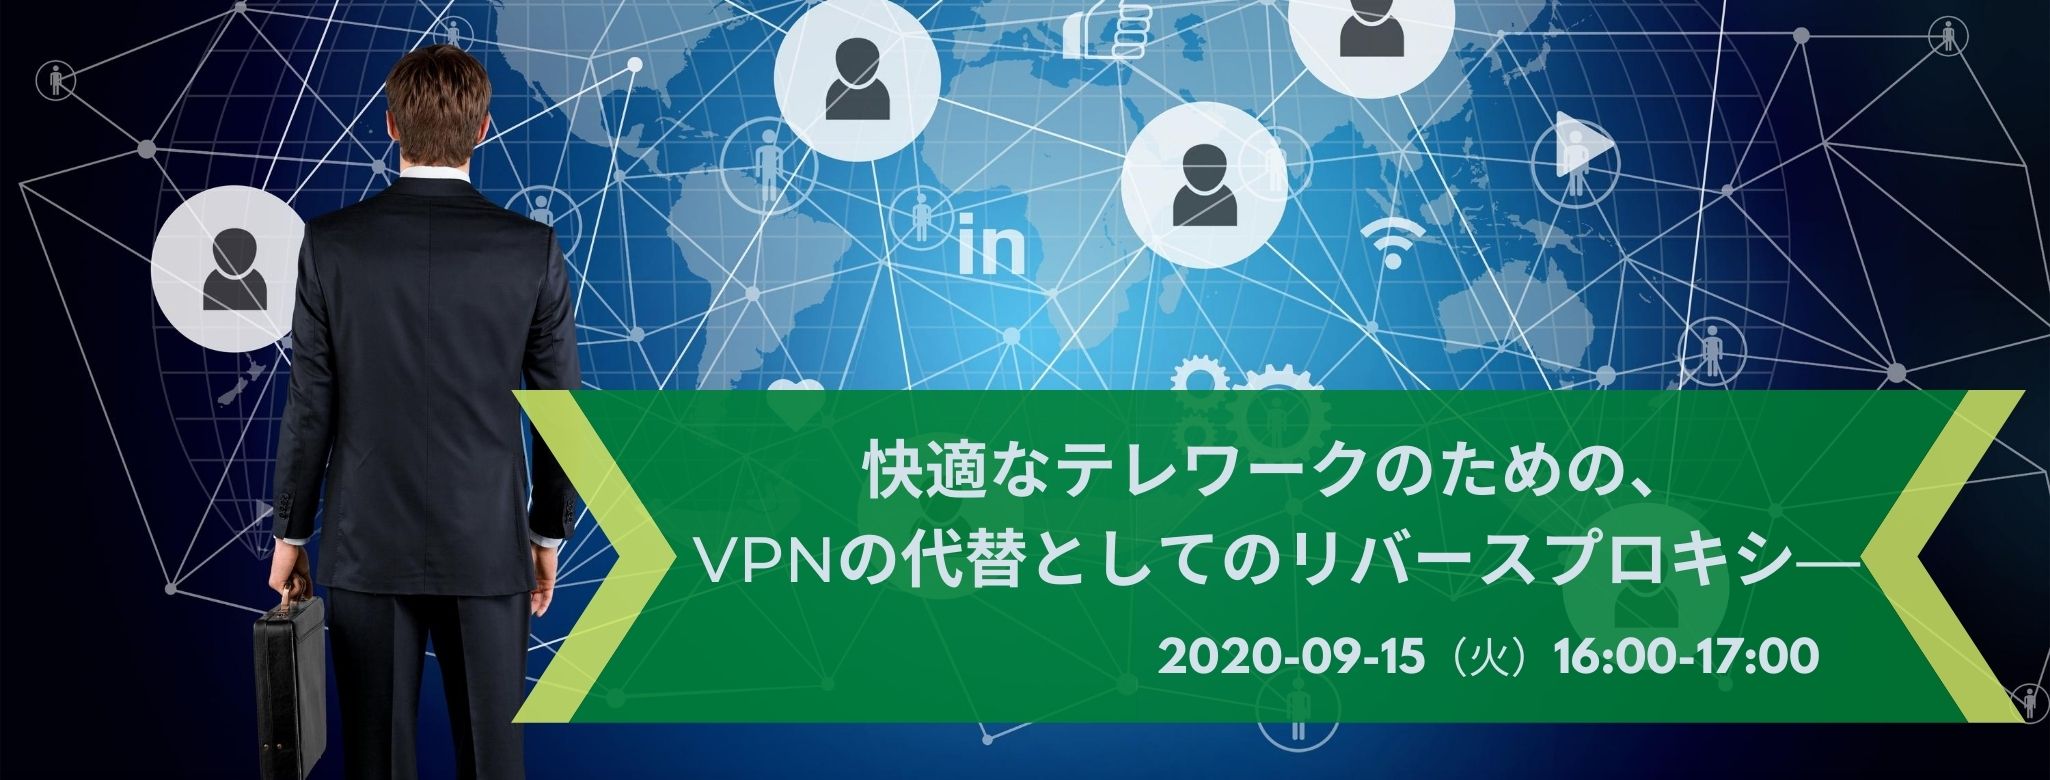  快適なテレワークのための、VPNの代替としてのリバースプロキシ― 